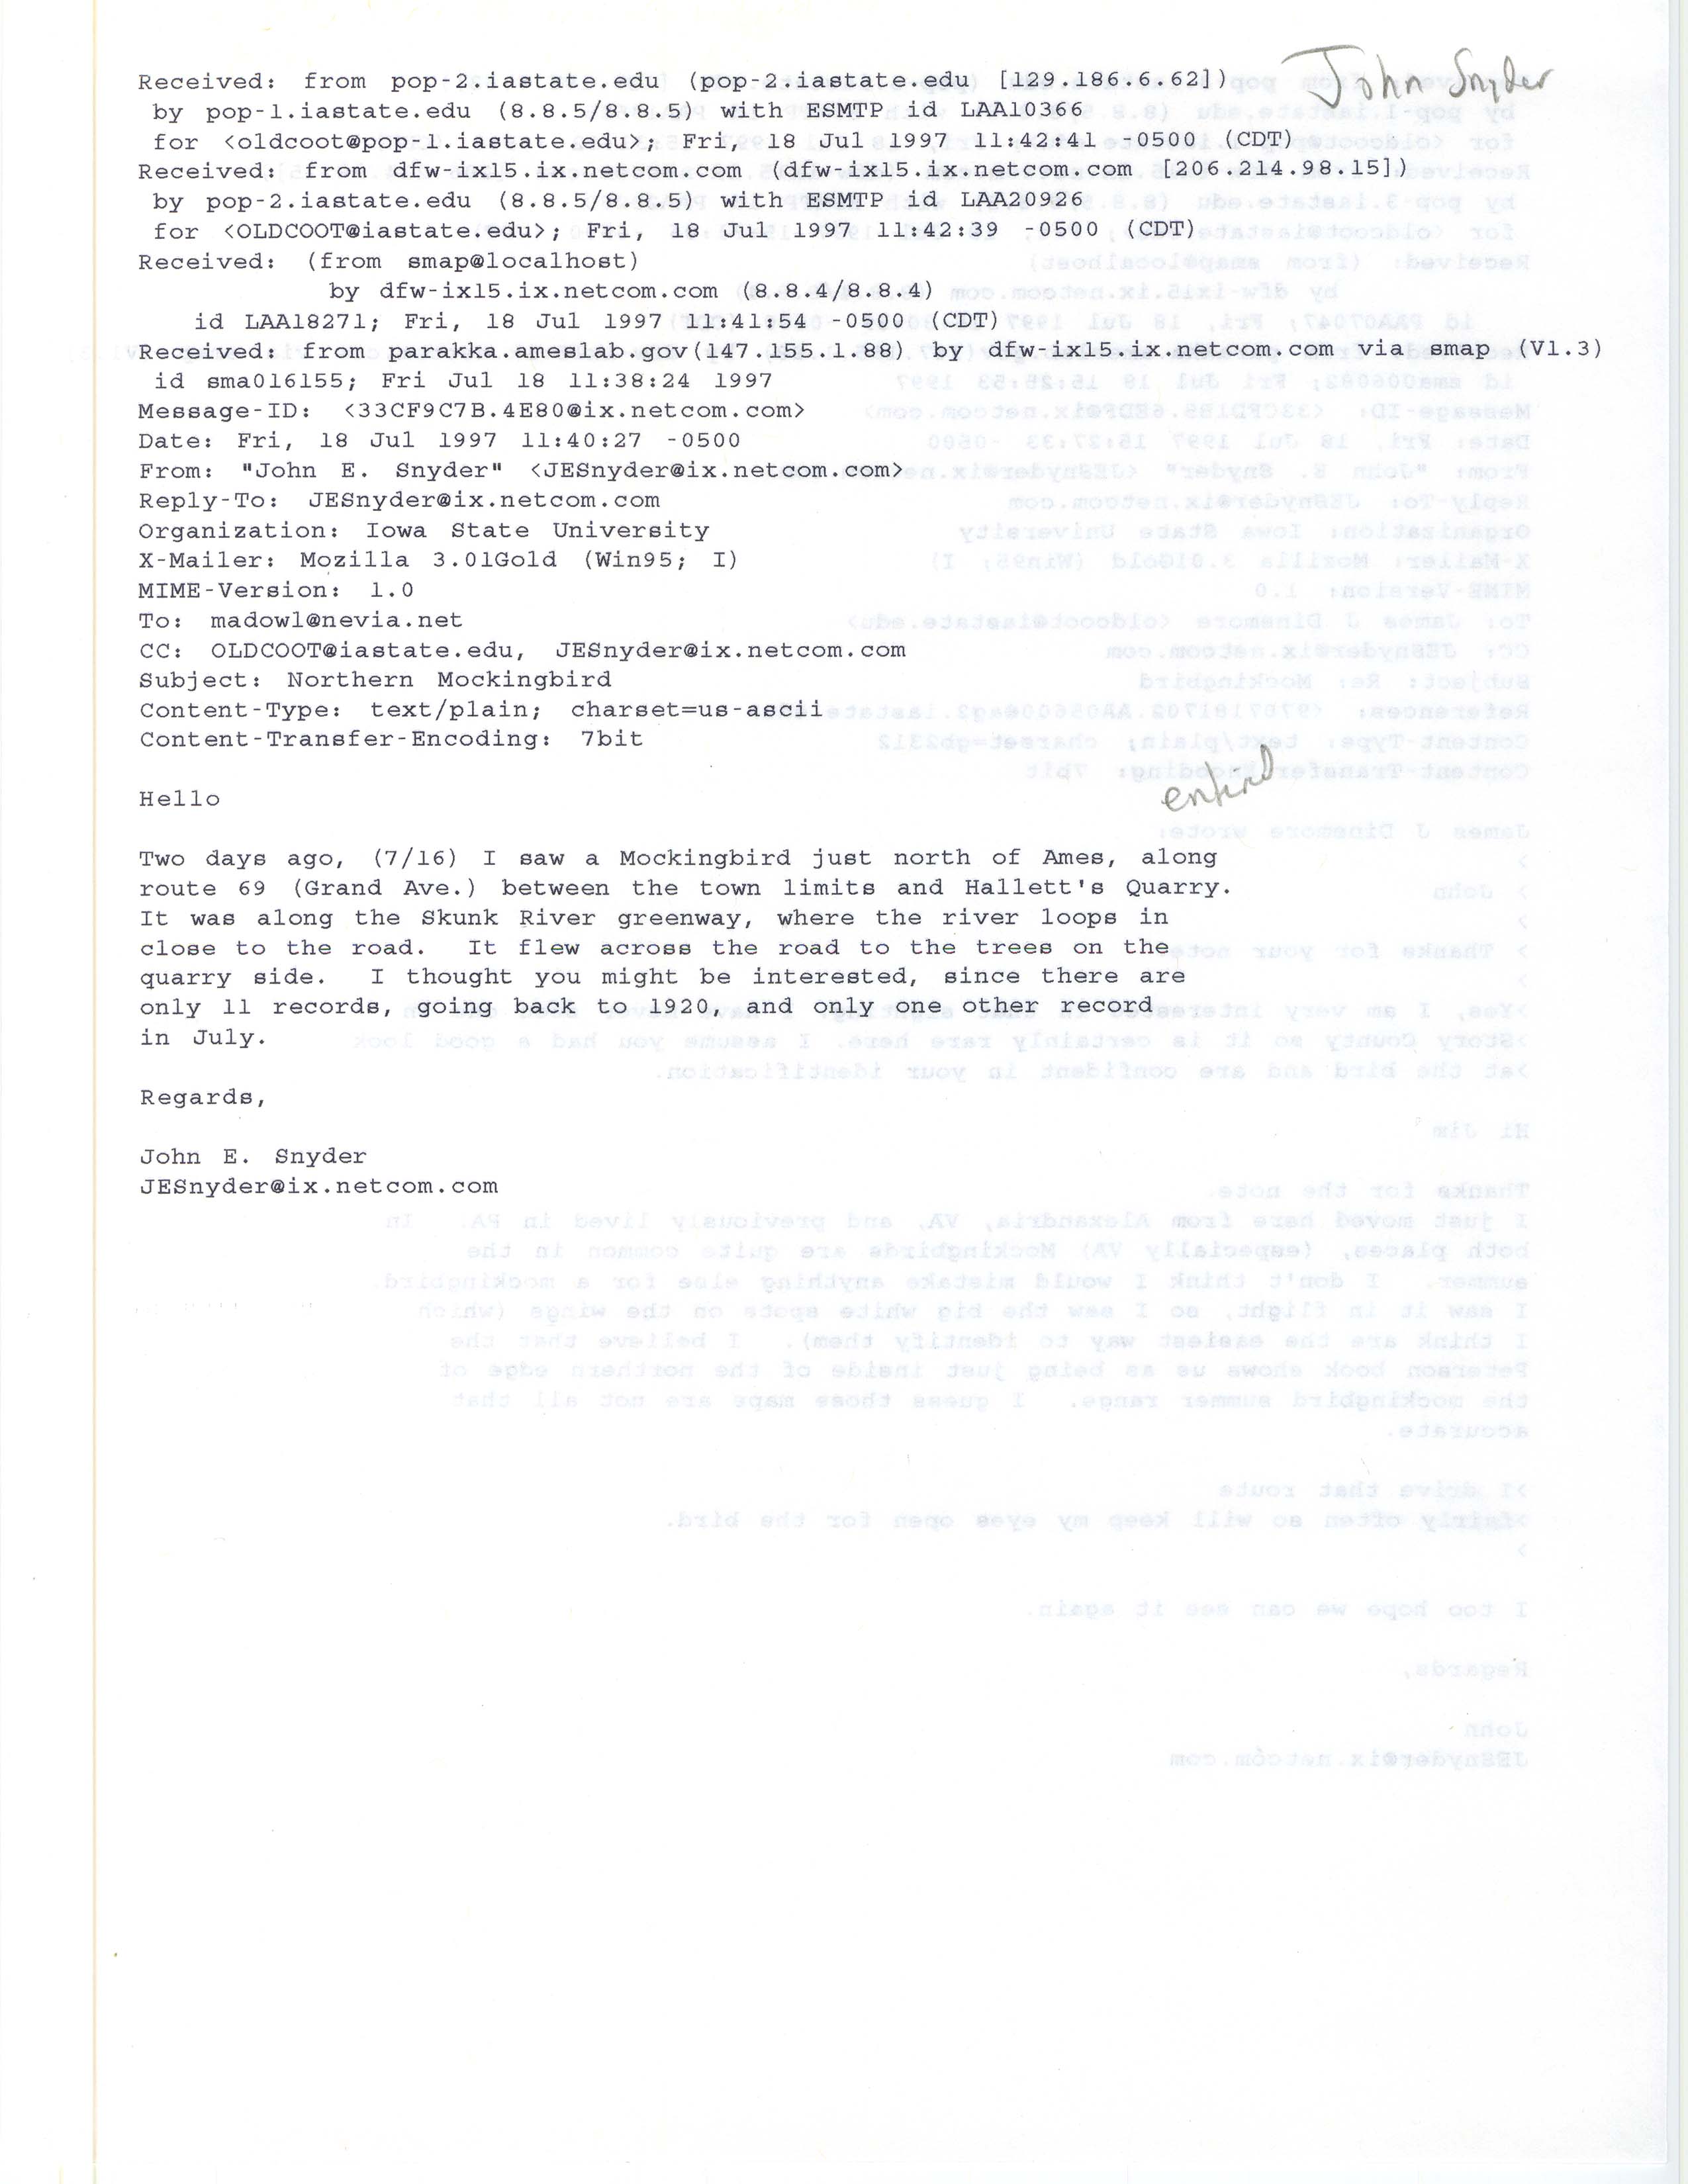 John Evan Snyder emails to James J. Dinsmore regarding a Northern Mockingbird sighting, July 18, 1997